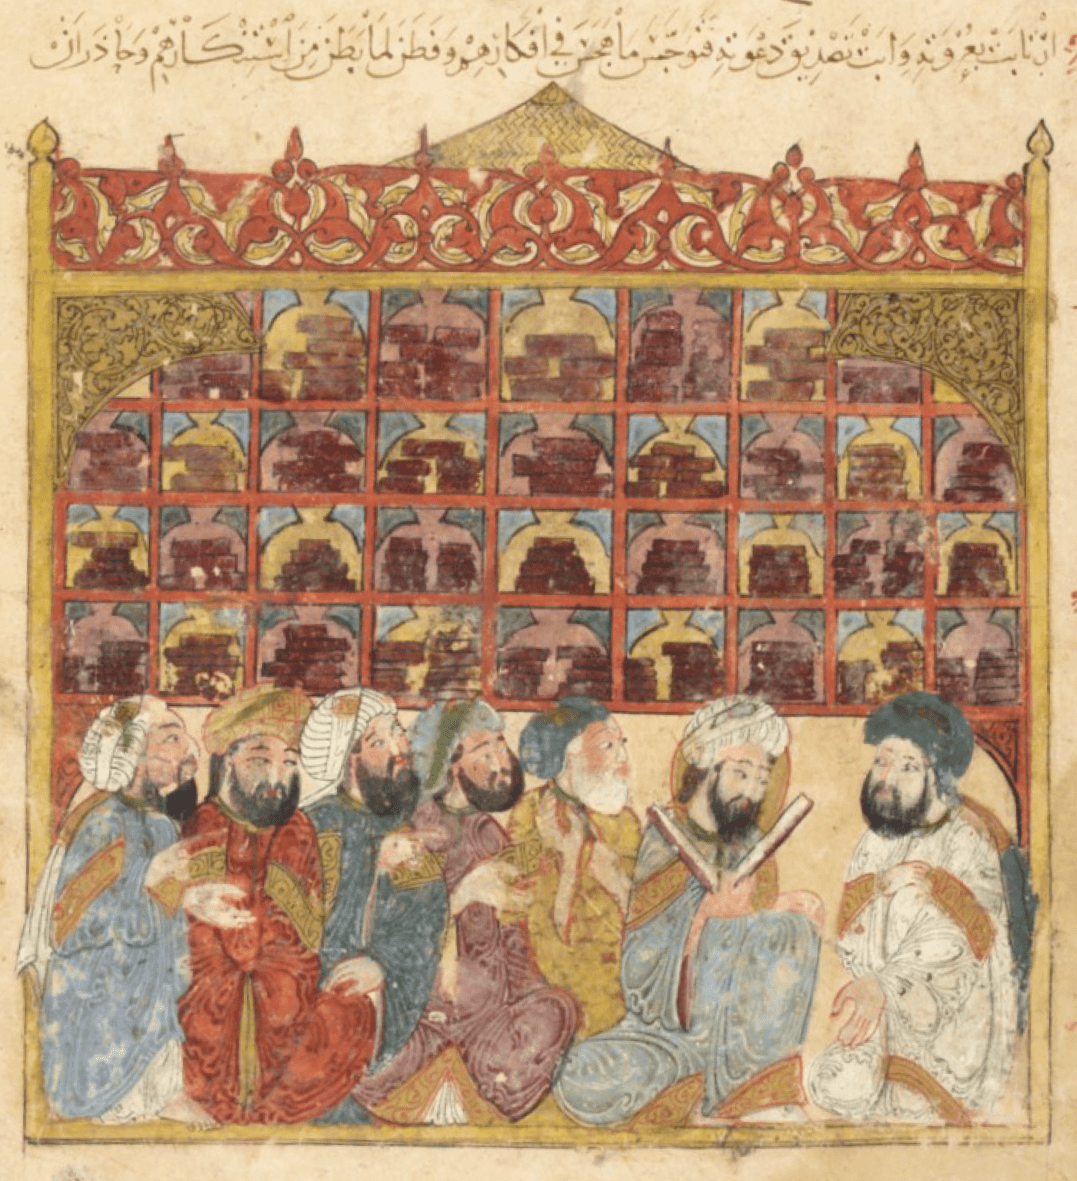 Érudits dans une bibliothèque. Maqâmât (Les Séances) d’al-Hariri (m. 1122) , copie illustrée par al-Wâsitî, Bagdad 1237. Manuscrit BnF. Utilisée pour représenter la Maison de la sagesse